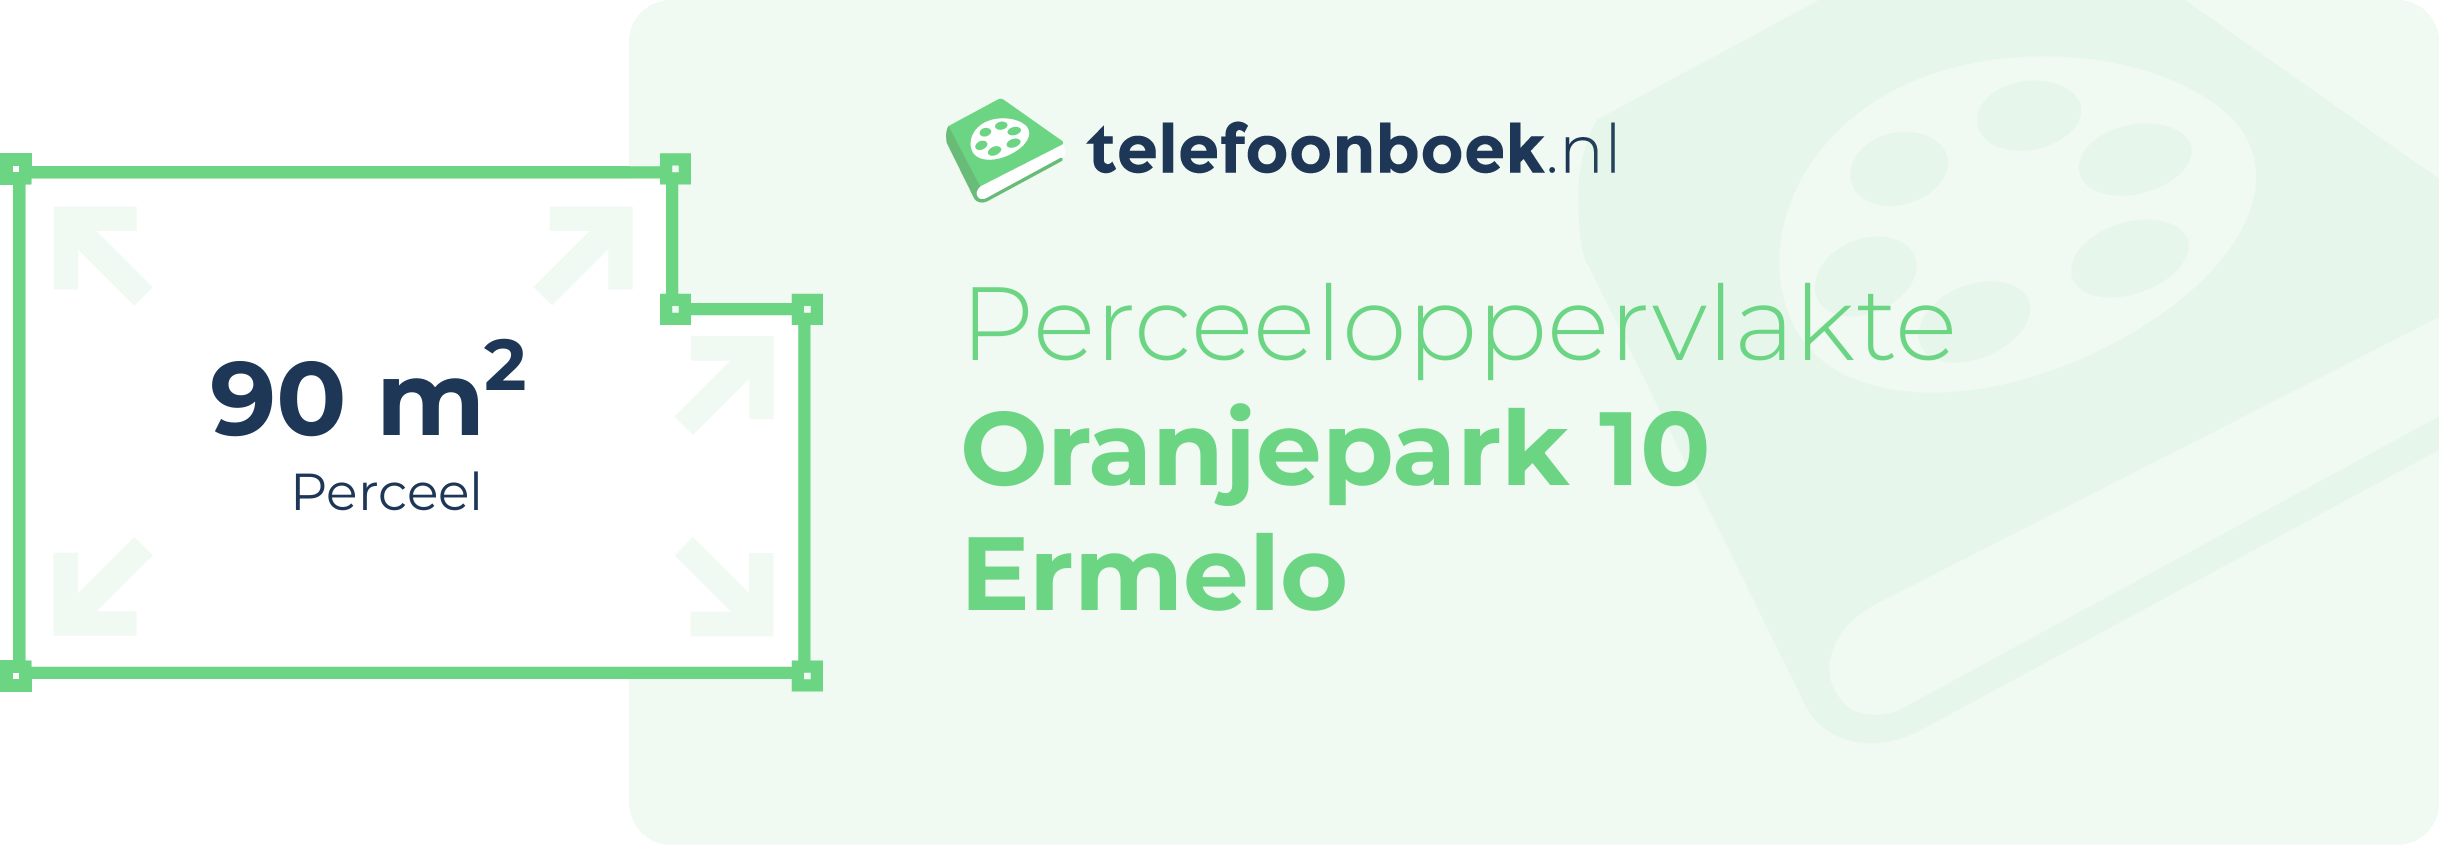 Perceeloppervlakte Oranjepark 10 Ermelo